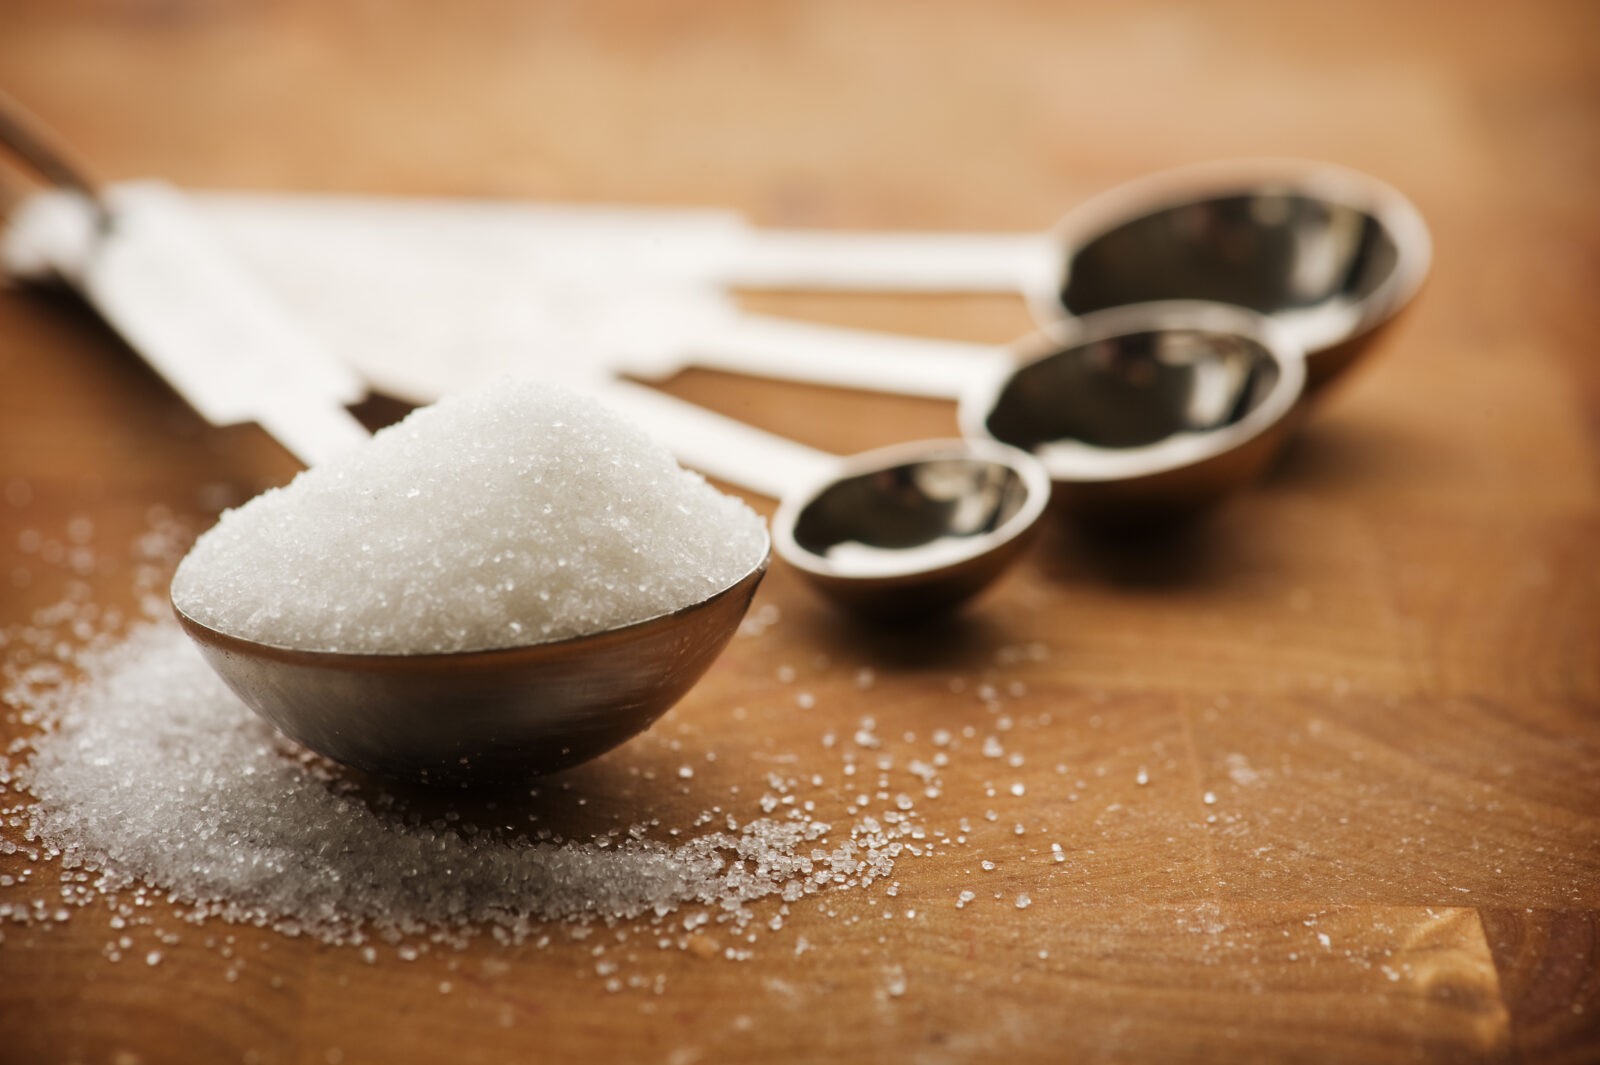 Cukier to biała śmierć? Przeciwnie. Alternatywa dla antybiotyków